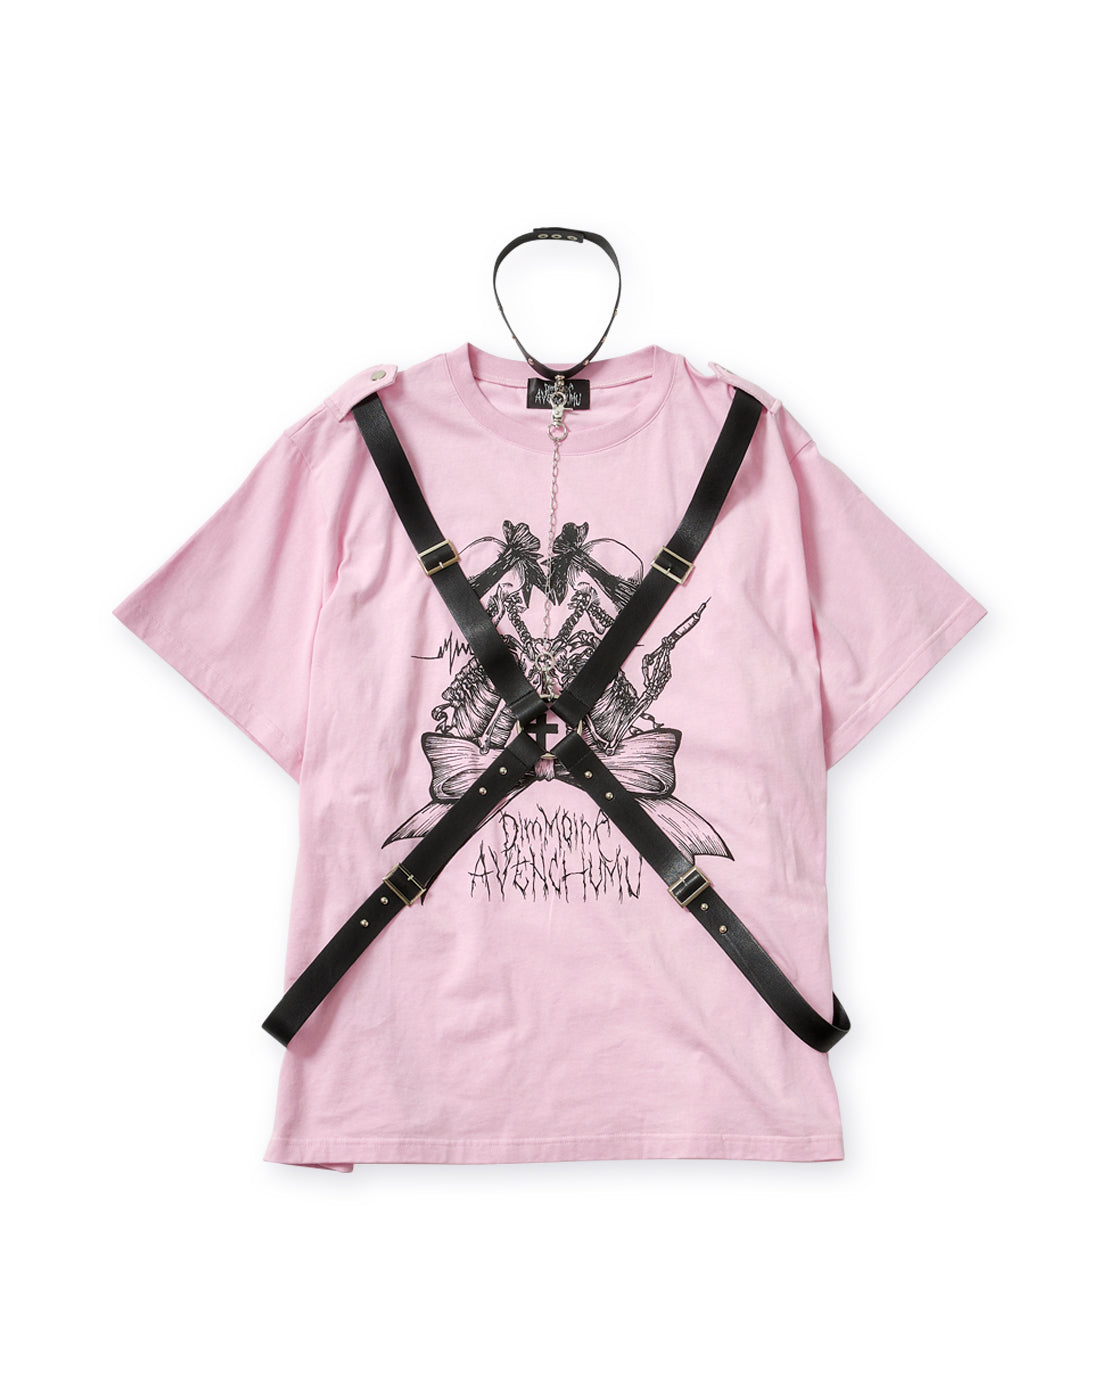 【5月31日(金)17:00予約開始】twin skull print harness T-shirt